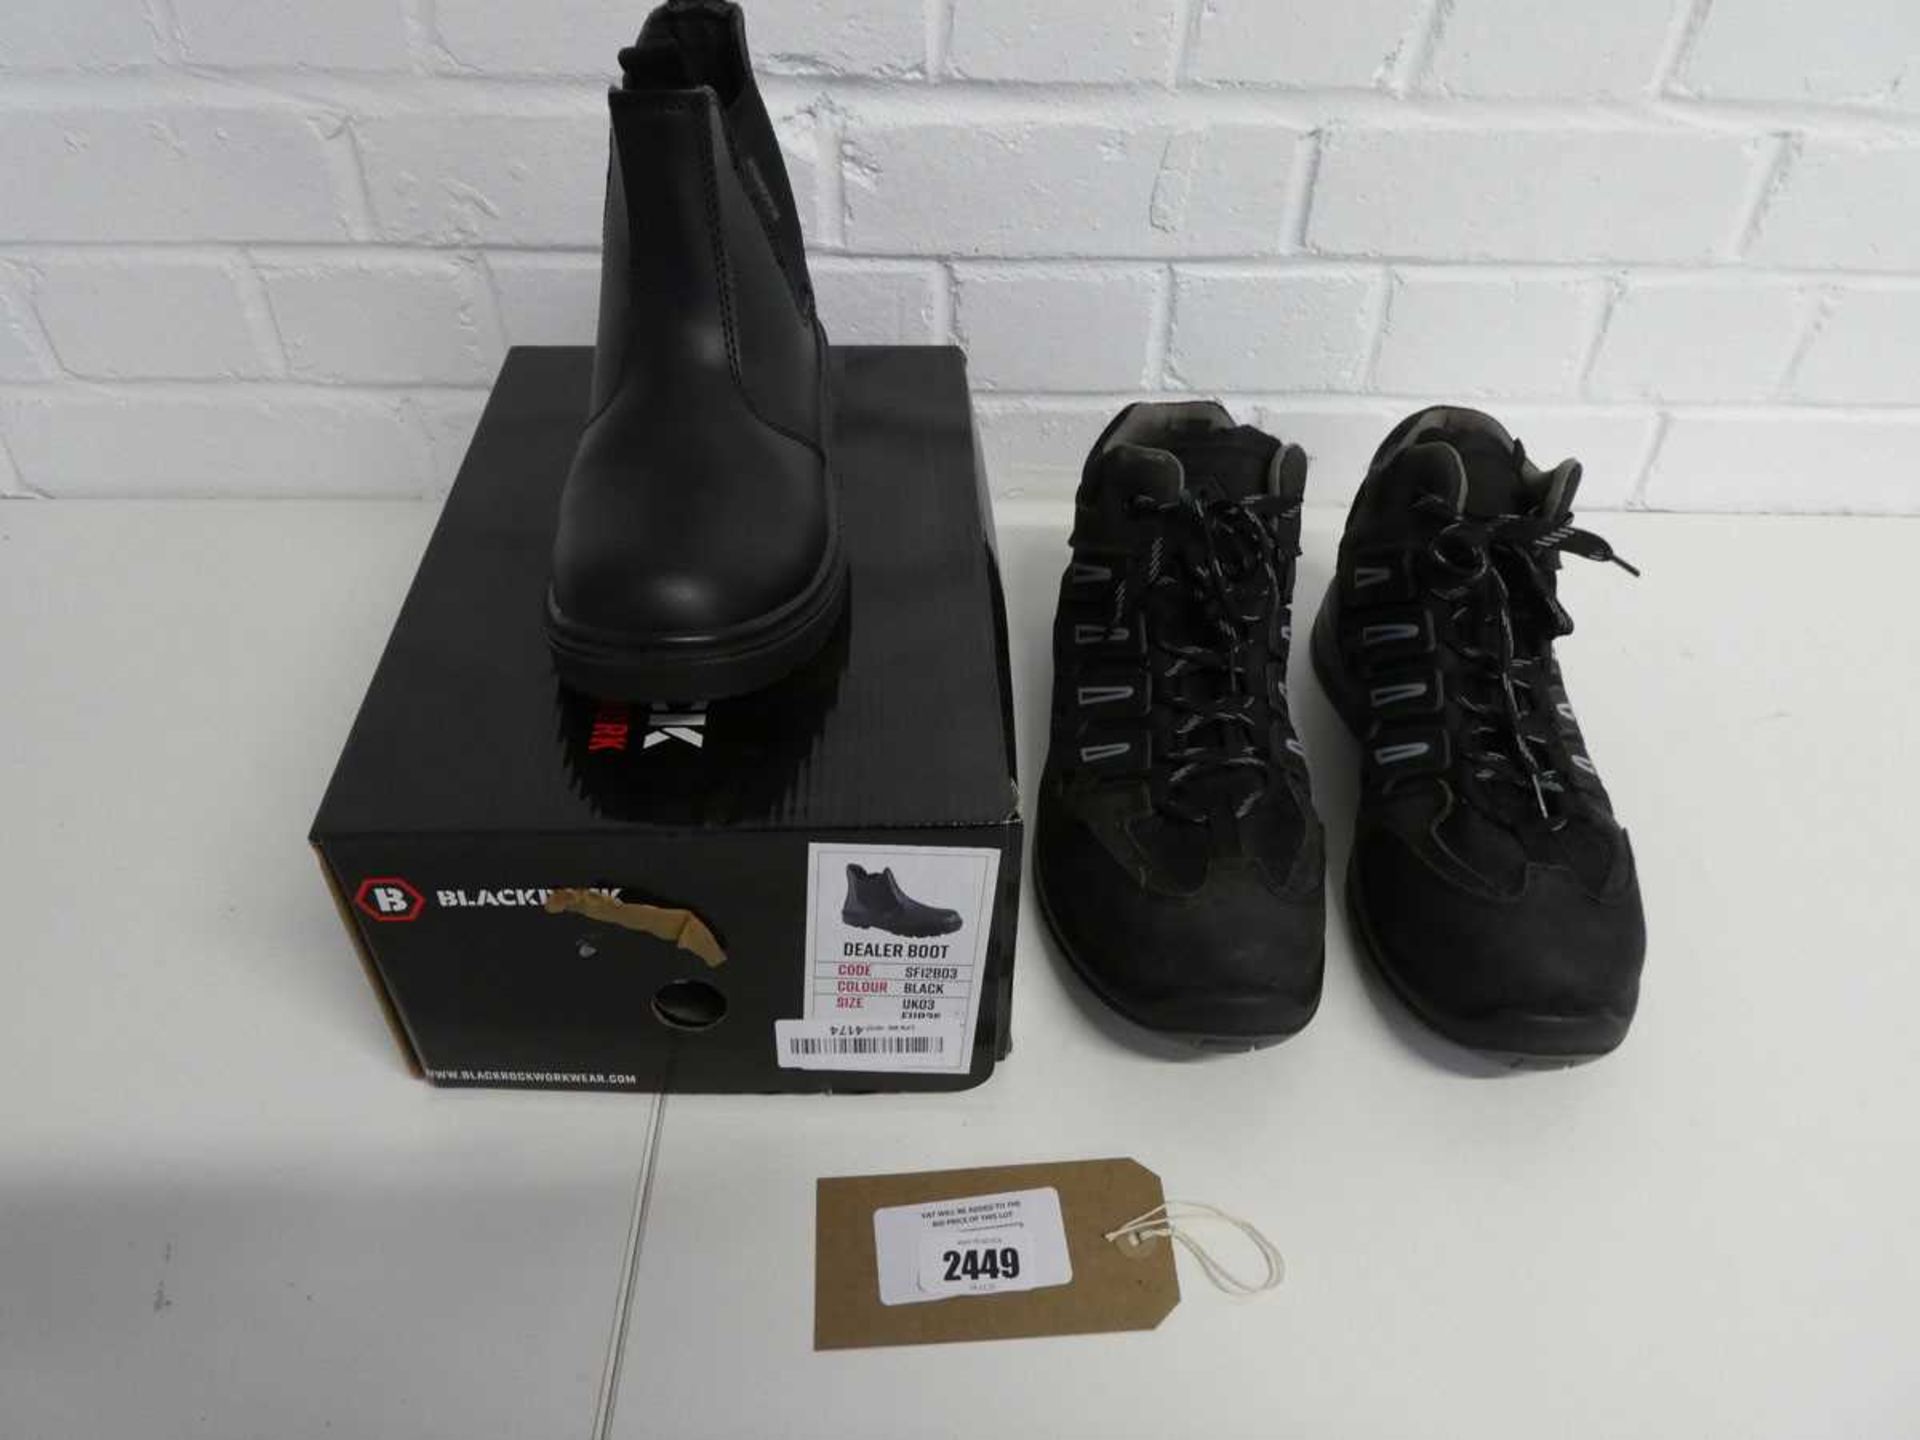 Boxed pair Blackrock safety dealer boots (UK3), with pair of Blackrock steel toe safety boots (